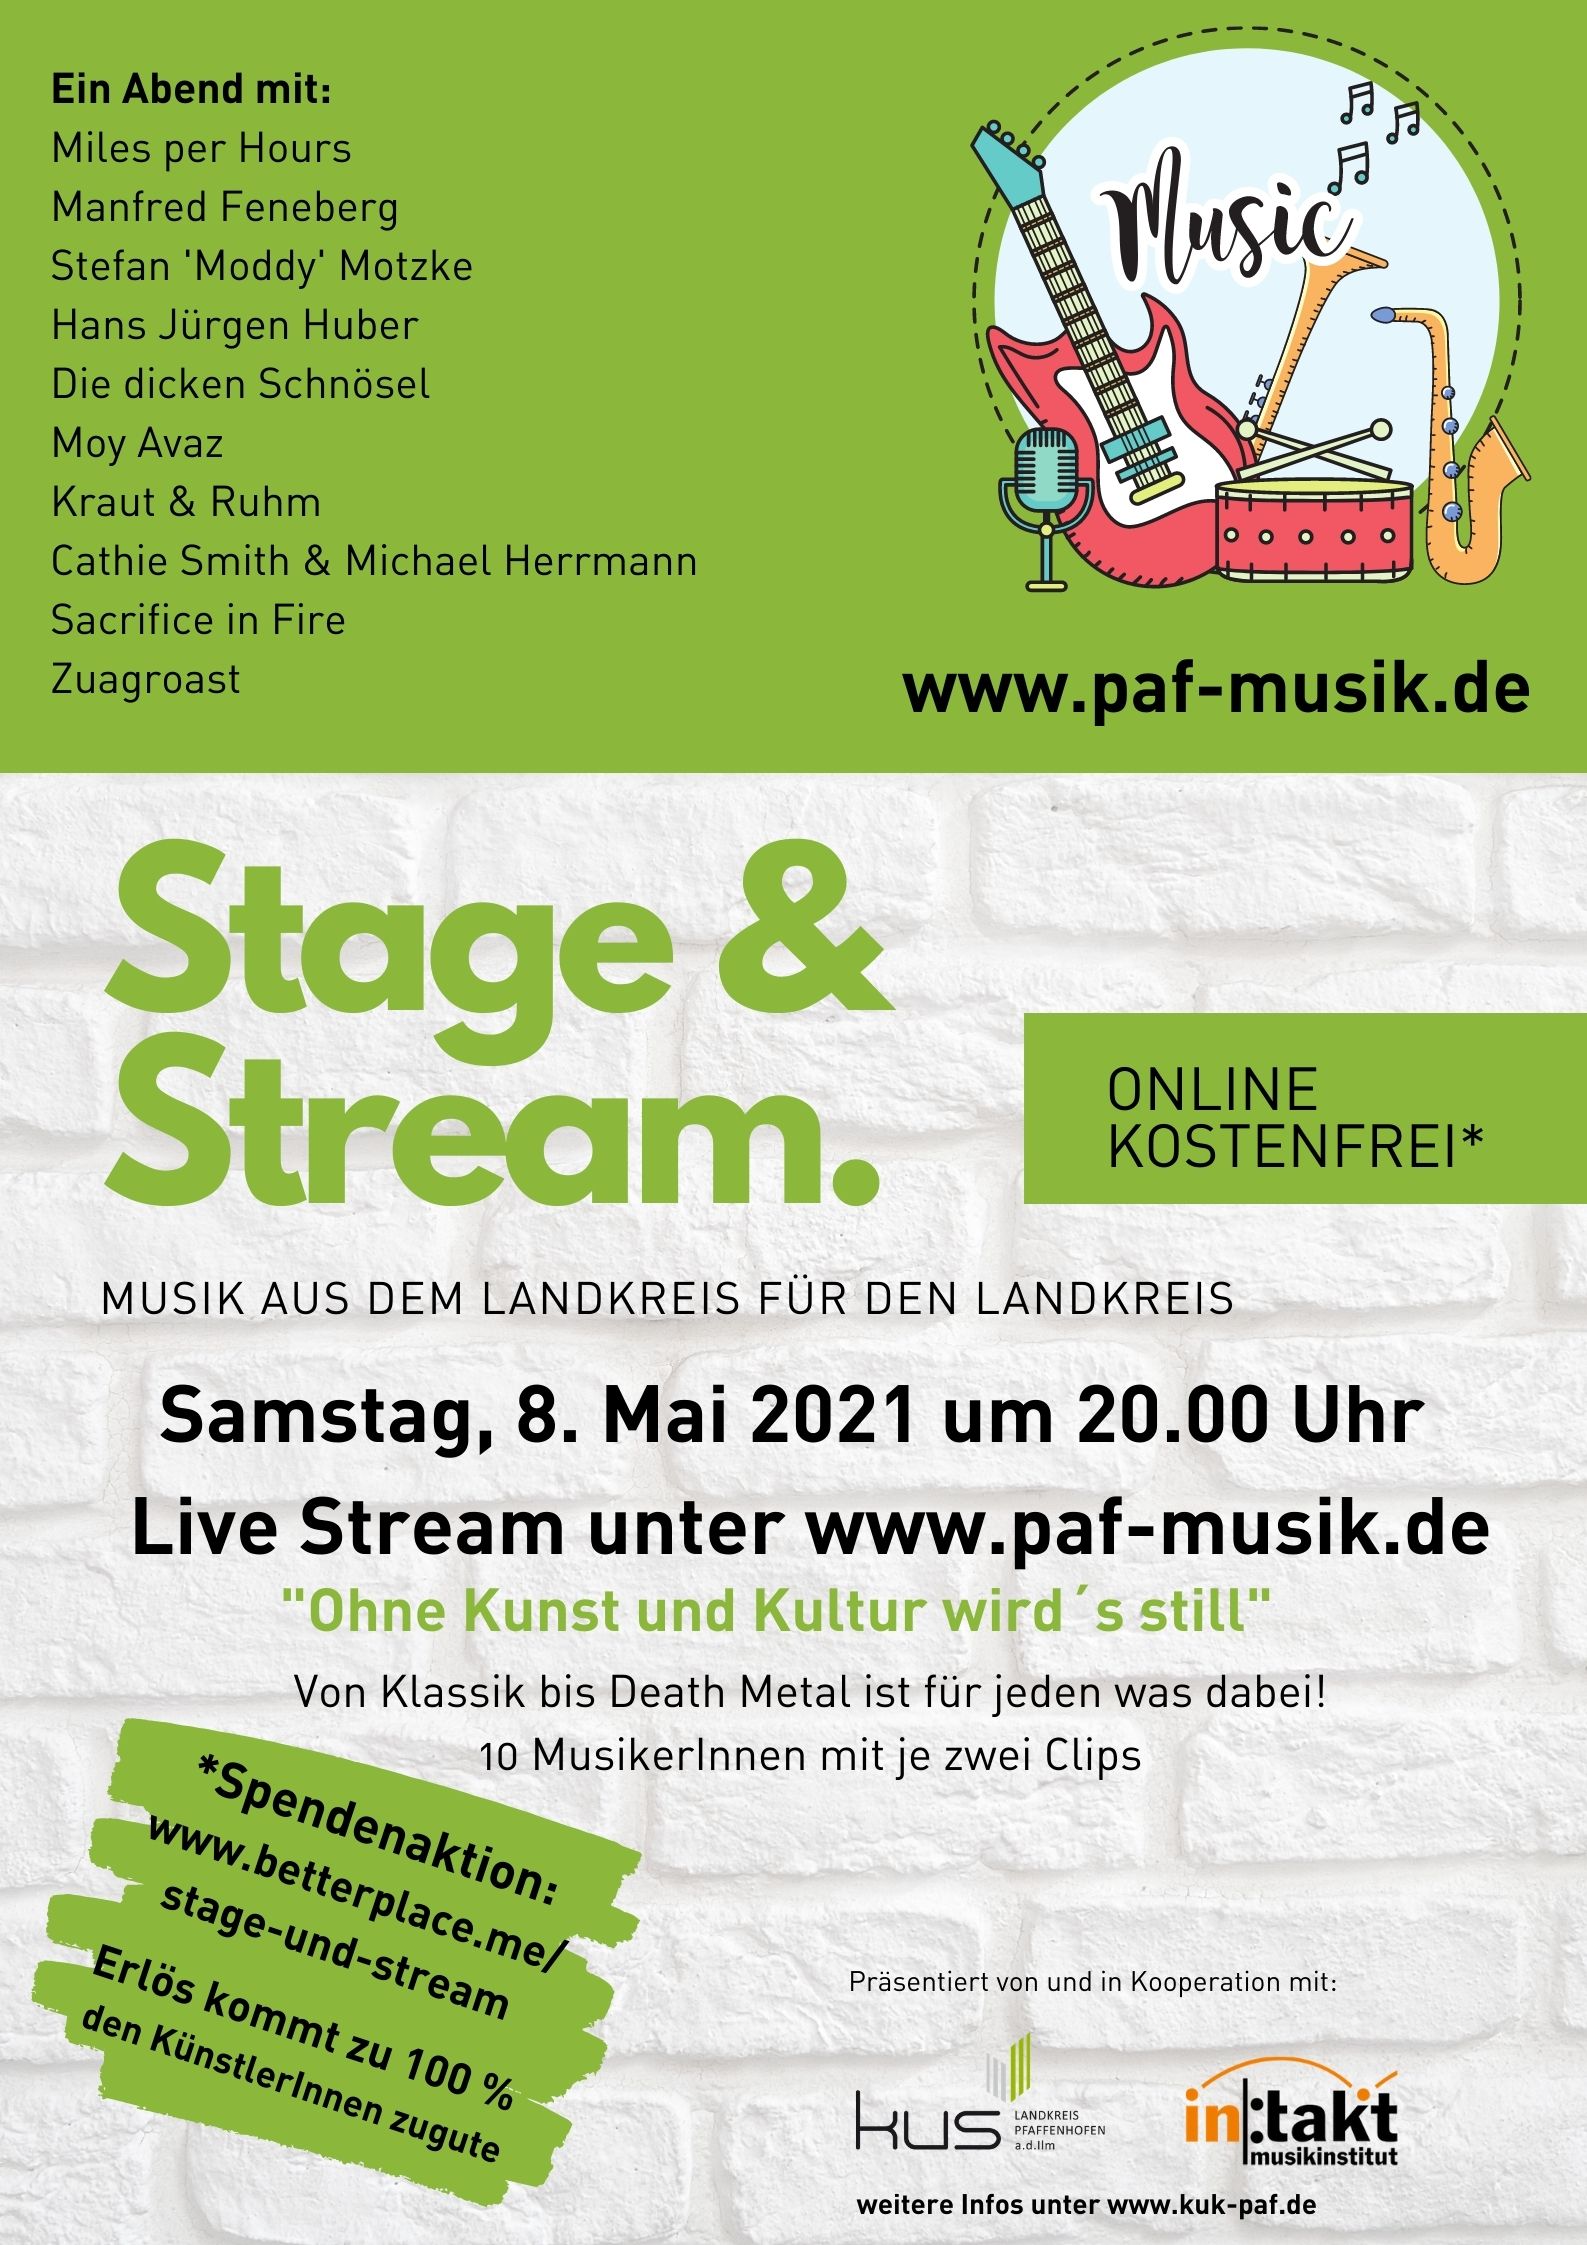 Stage & Stream – Musik aus dem Landkreis für den Landkreis